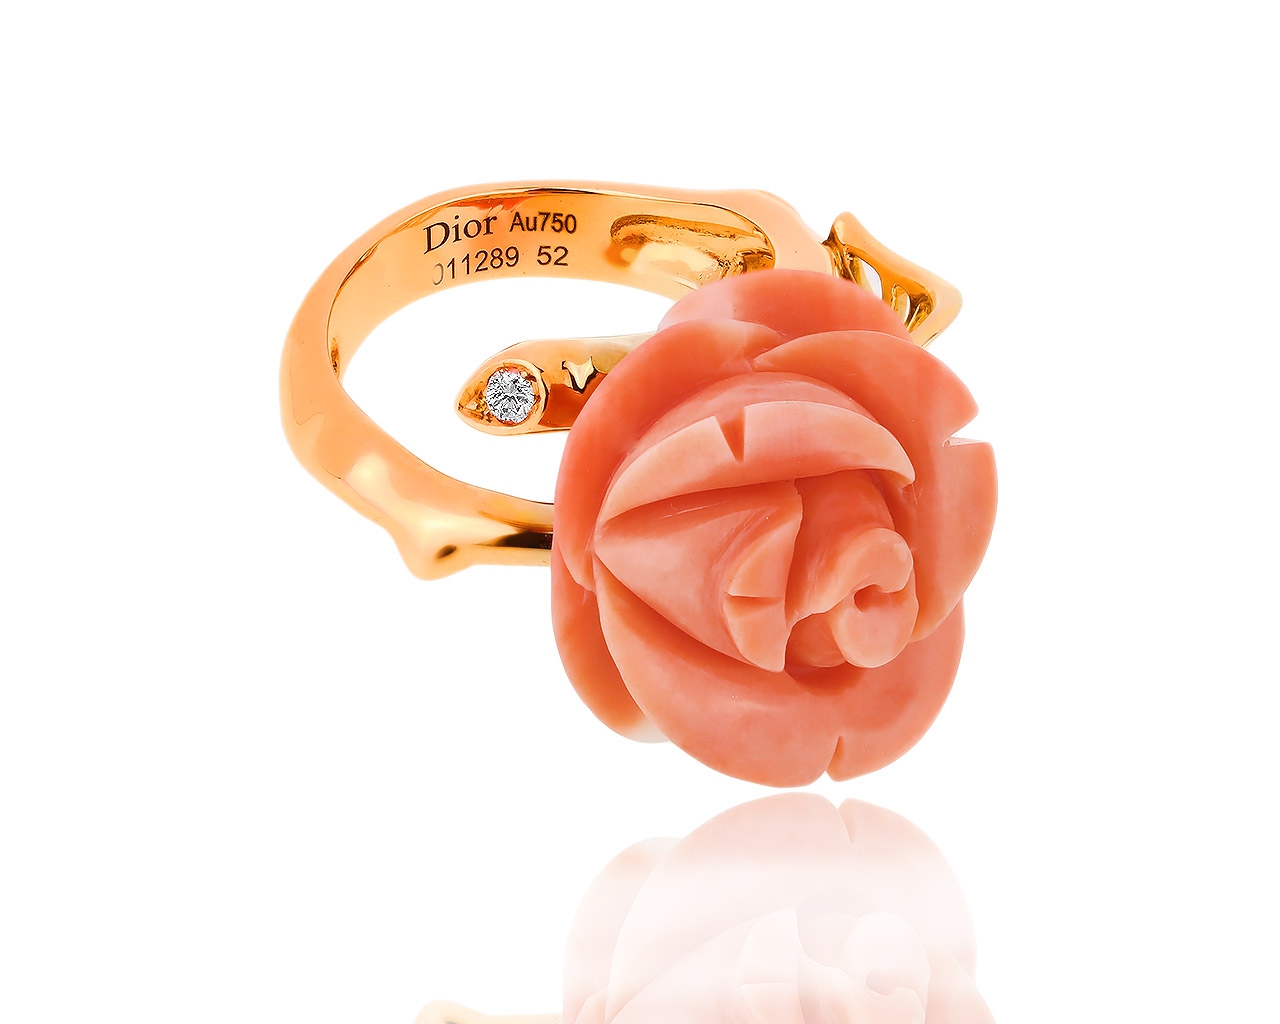 Нежное золотое кольцо с кораллом и бриллиантом Dior